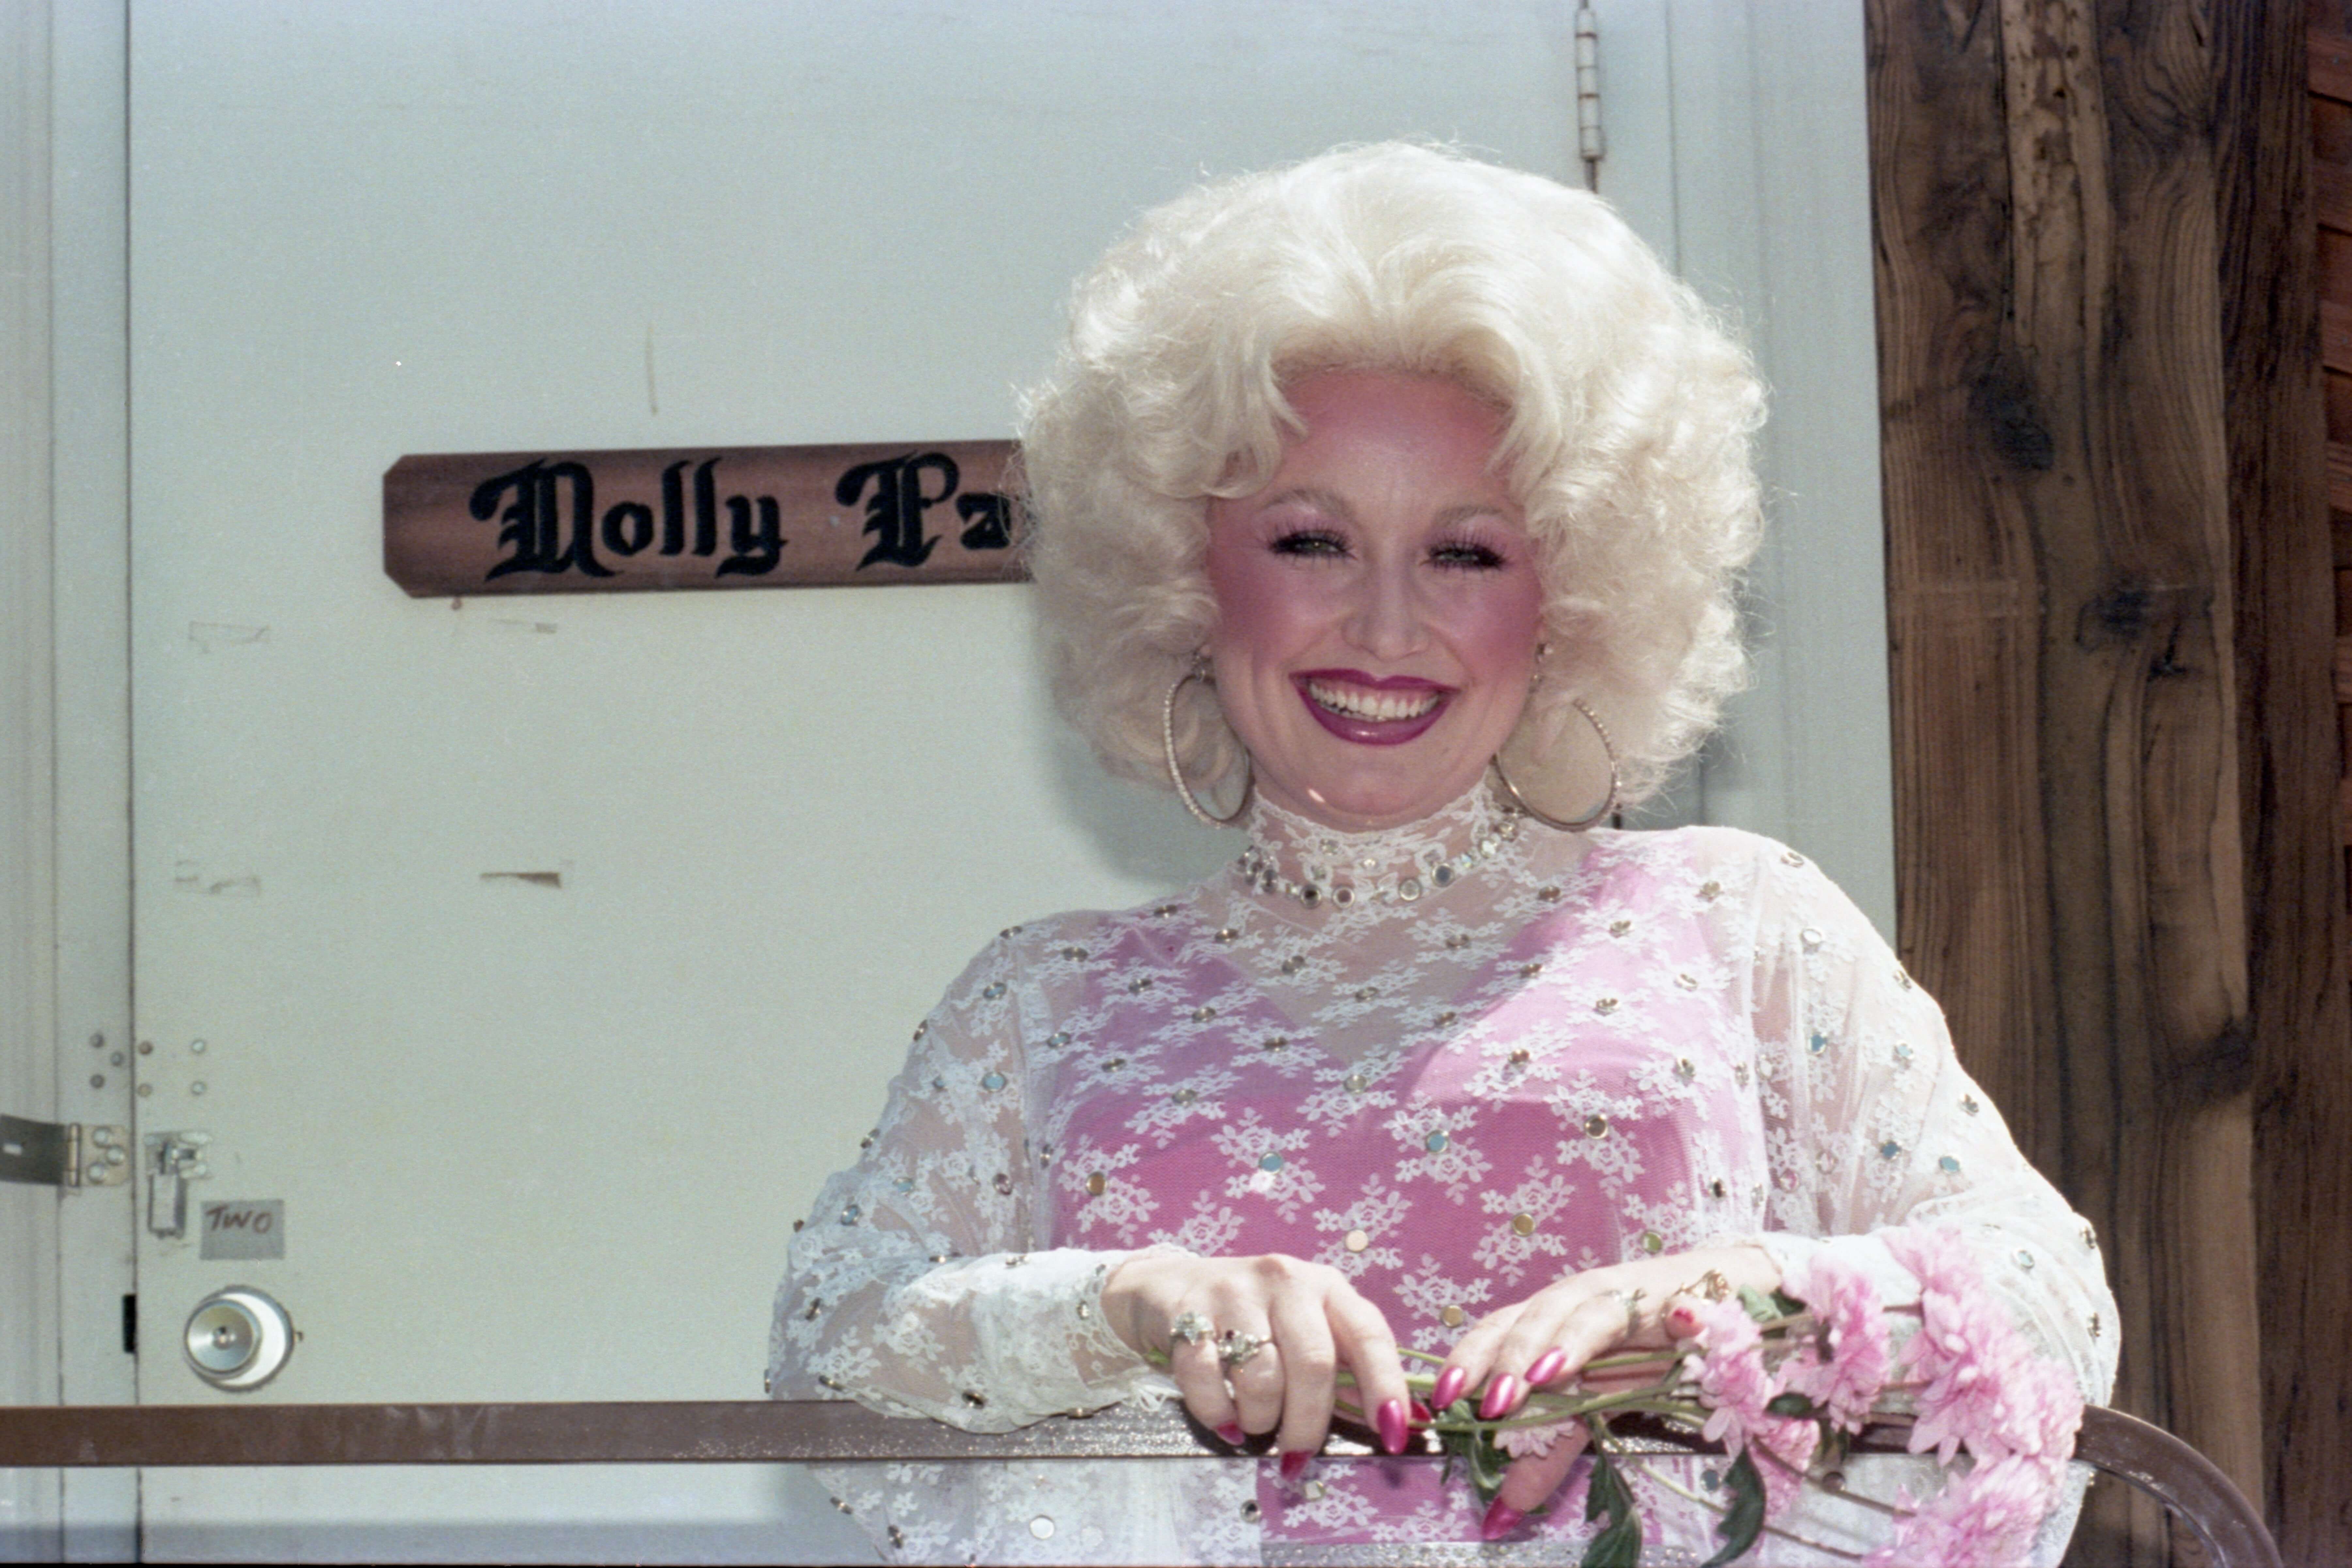 Warum Dolly Parton als Kind so an Make-up interessiert war, obwohl es verboten war